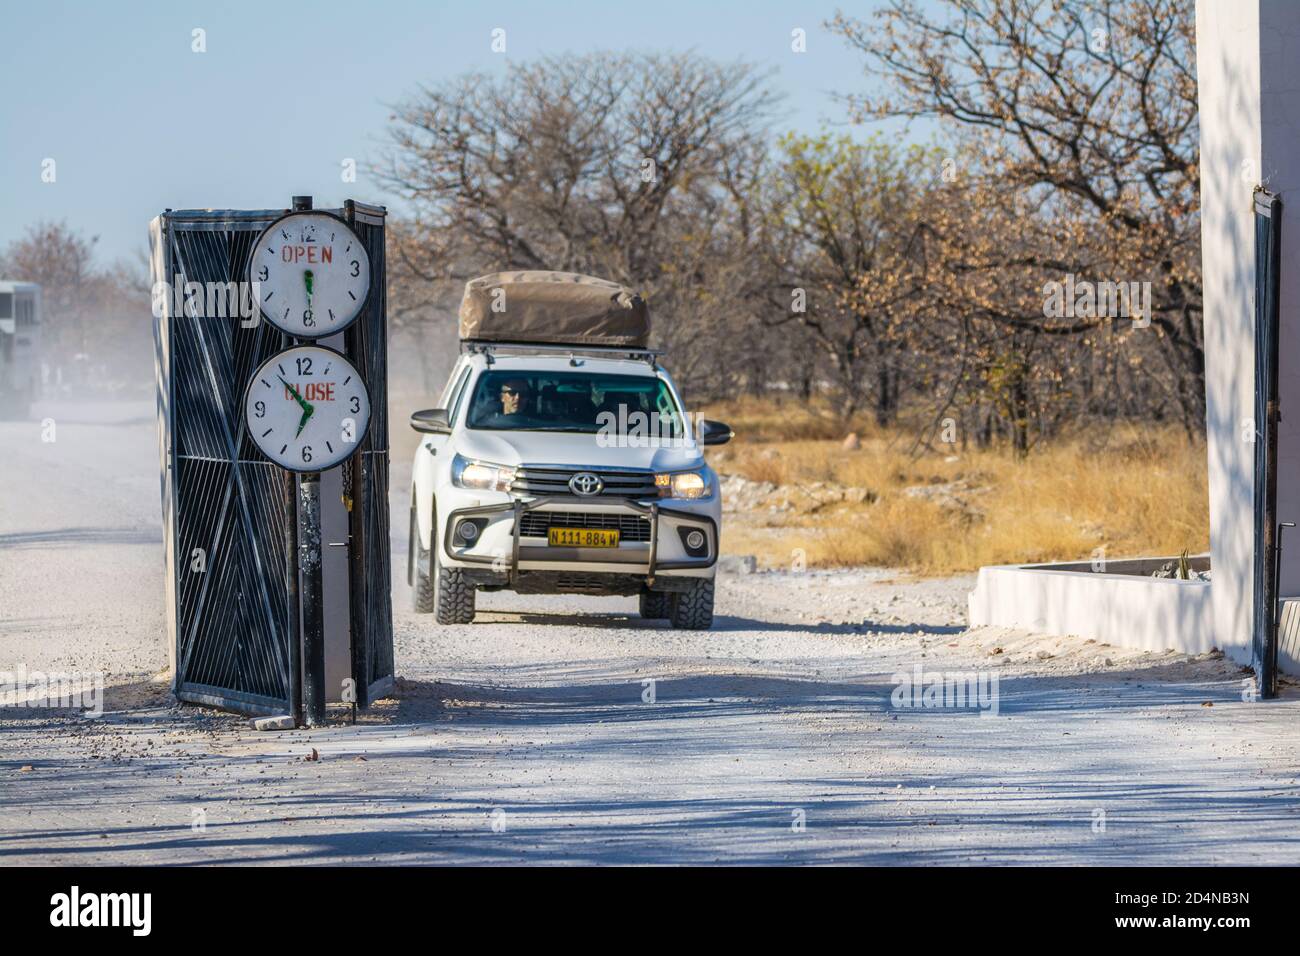 Entrée au camp de halali, avec heures d'ouverture et de fermeture marquées, Parc national d'Etosha, Namibie Banque D'Images